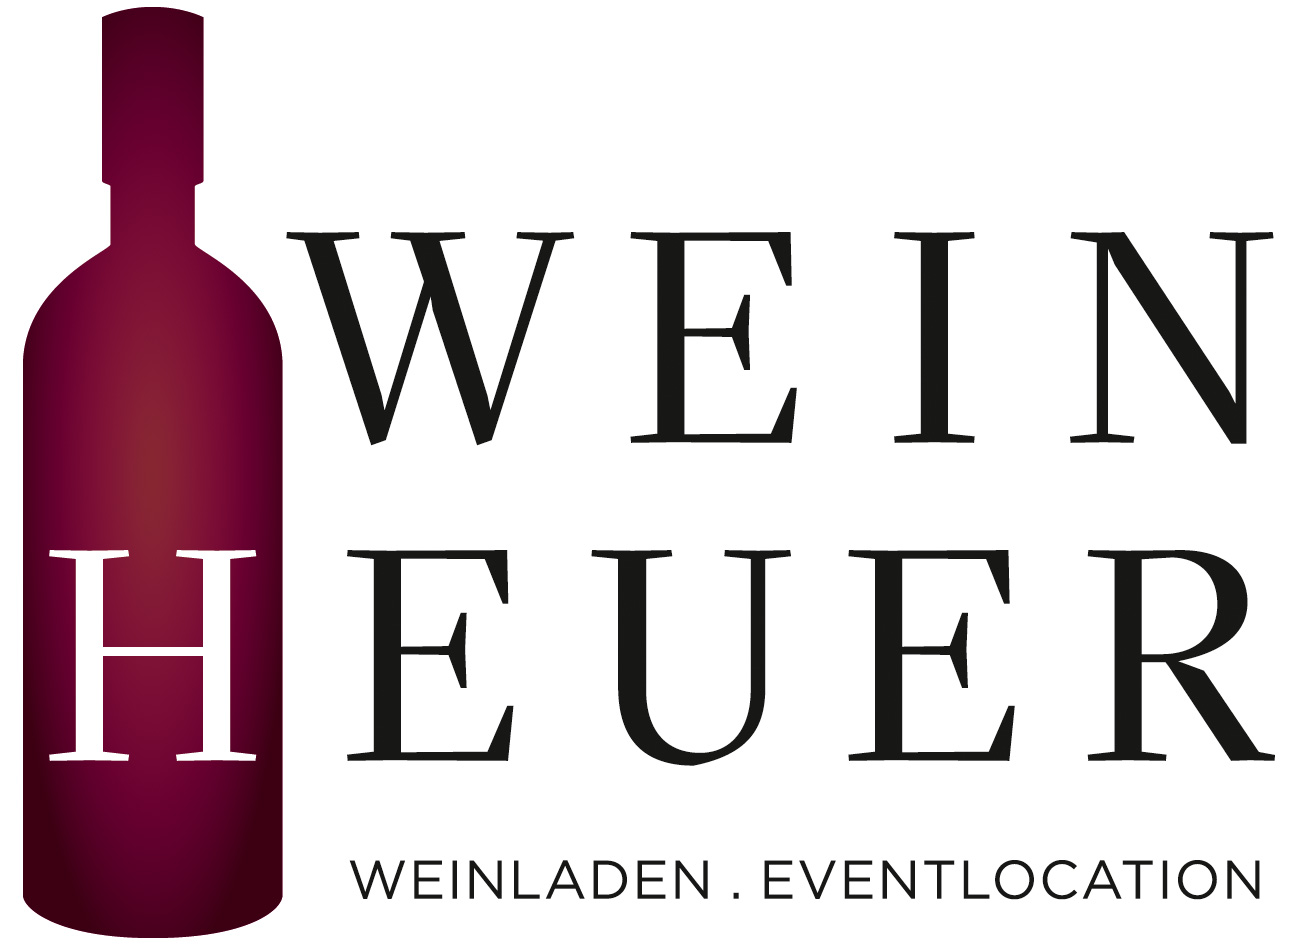 Der Weinheuer - Weinladen & Eventlocation in Berlin